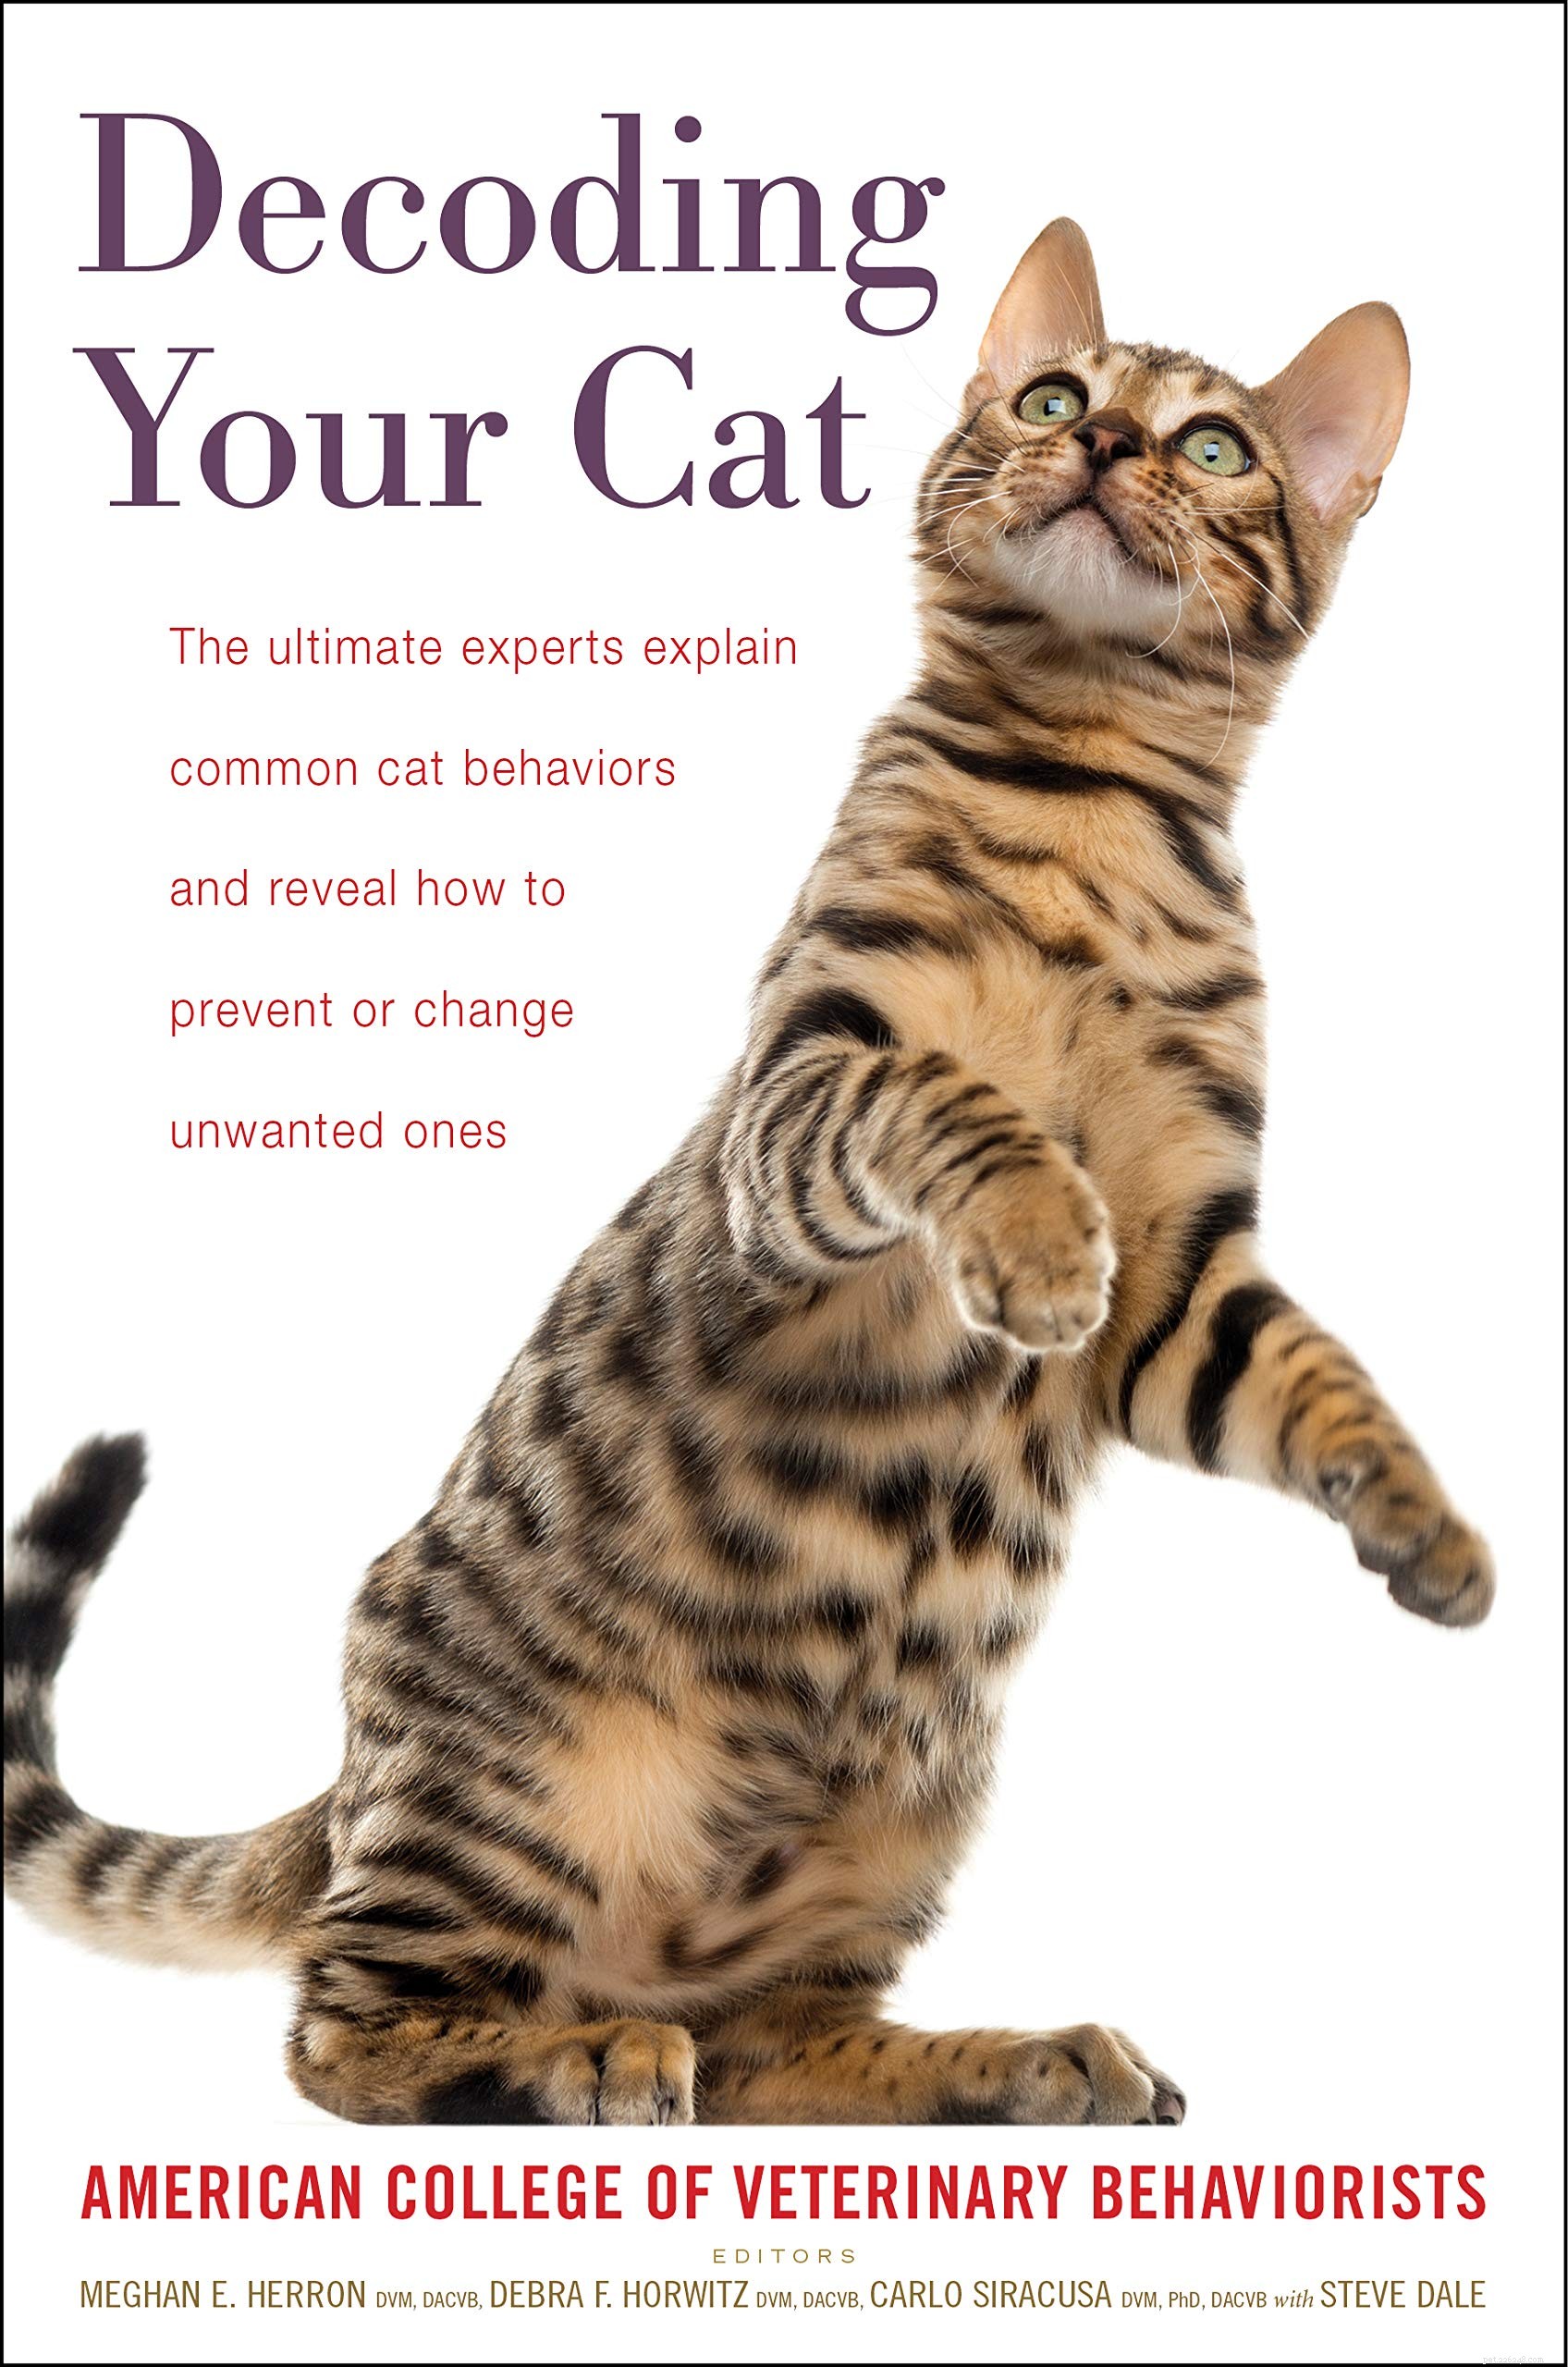 Top 10 des livres essentiels pour les nouveaux propriétaires de chats